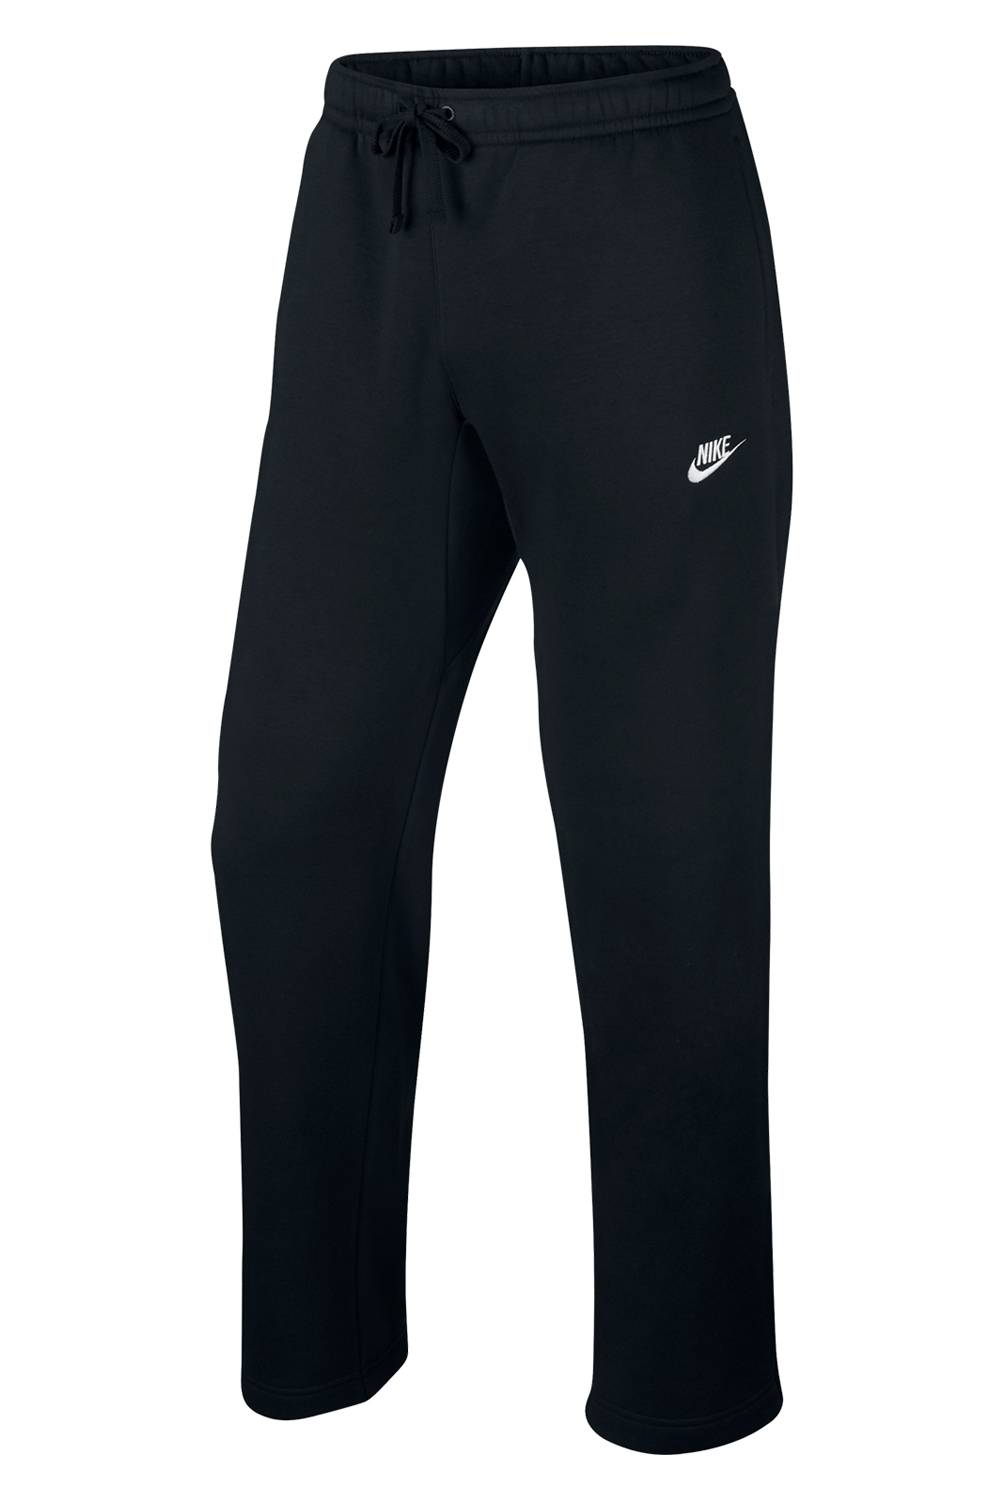 Nike - Pantalón Hombre